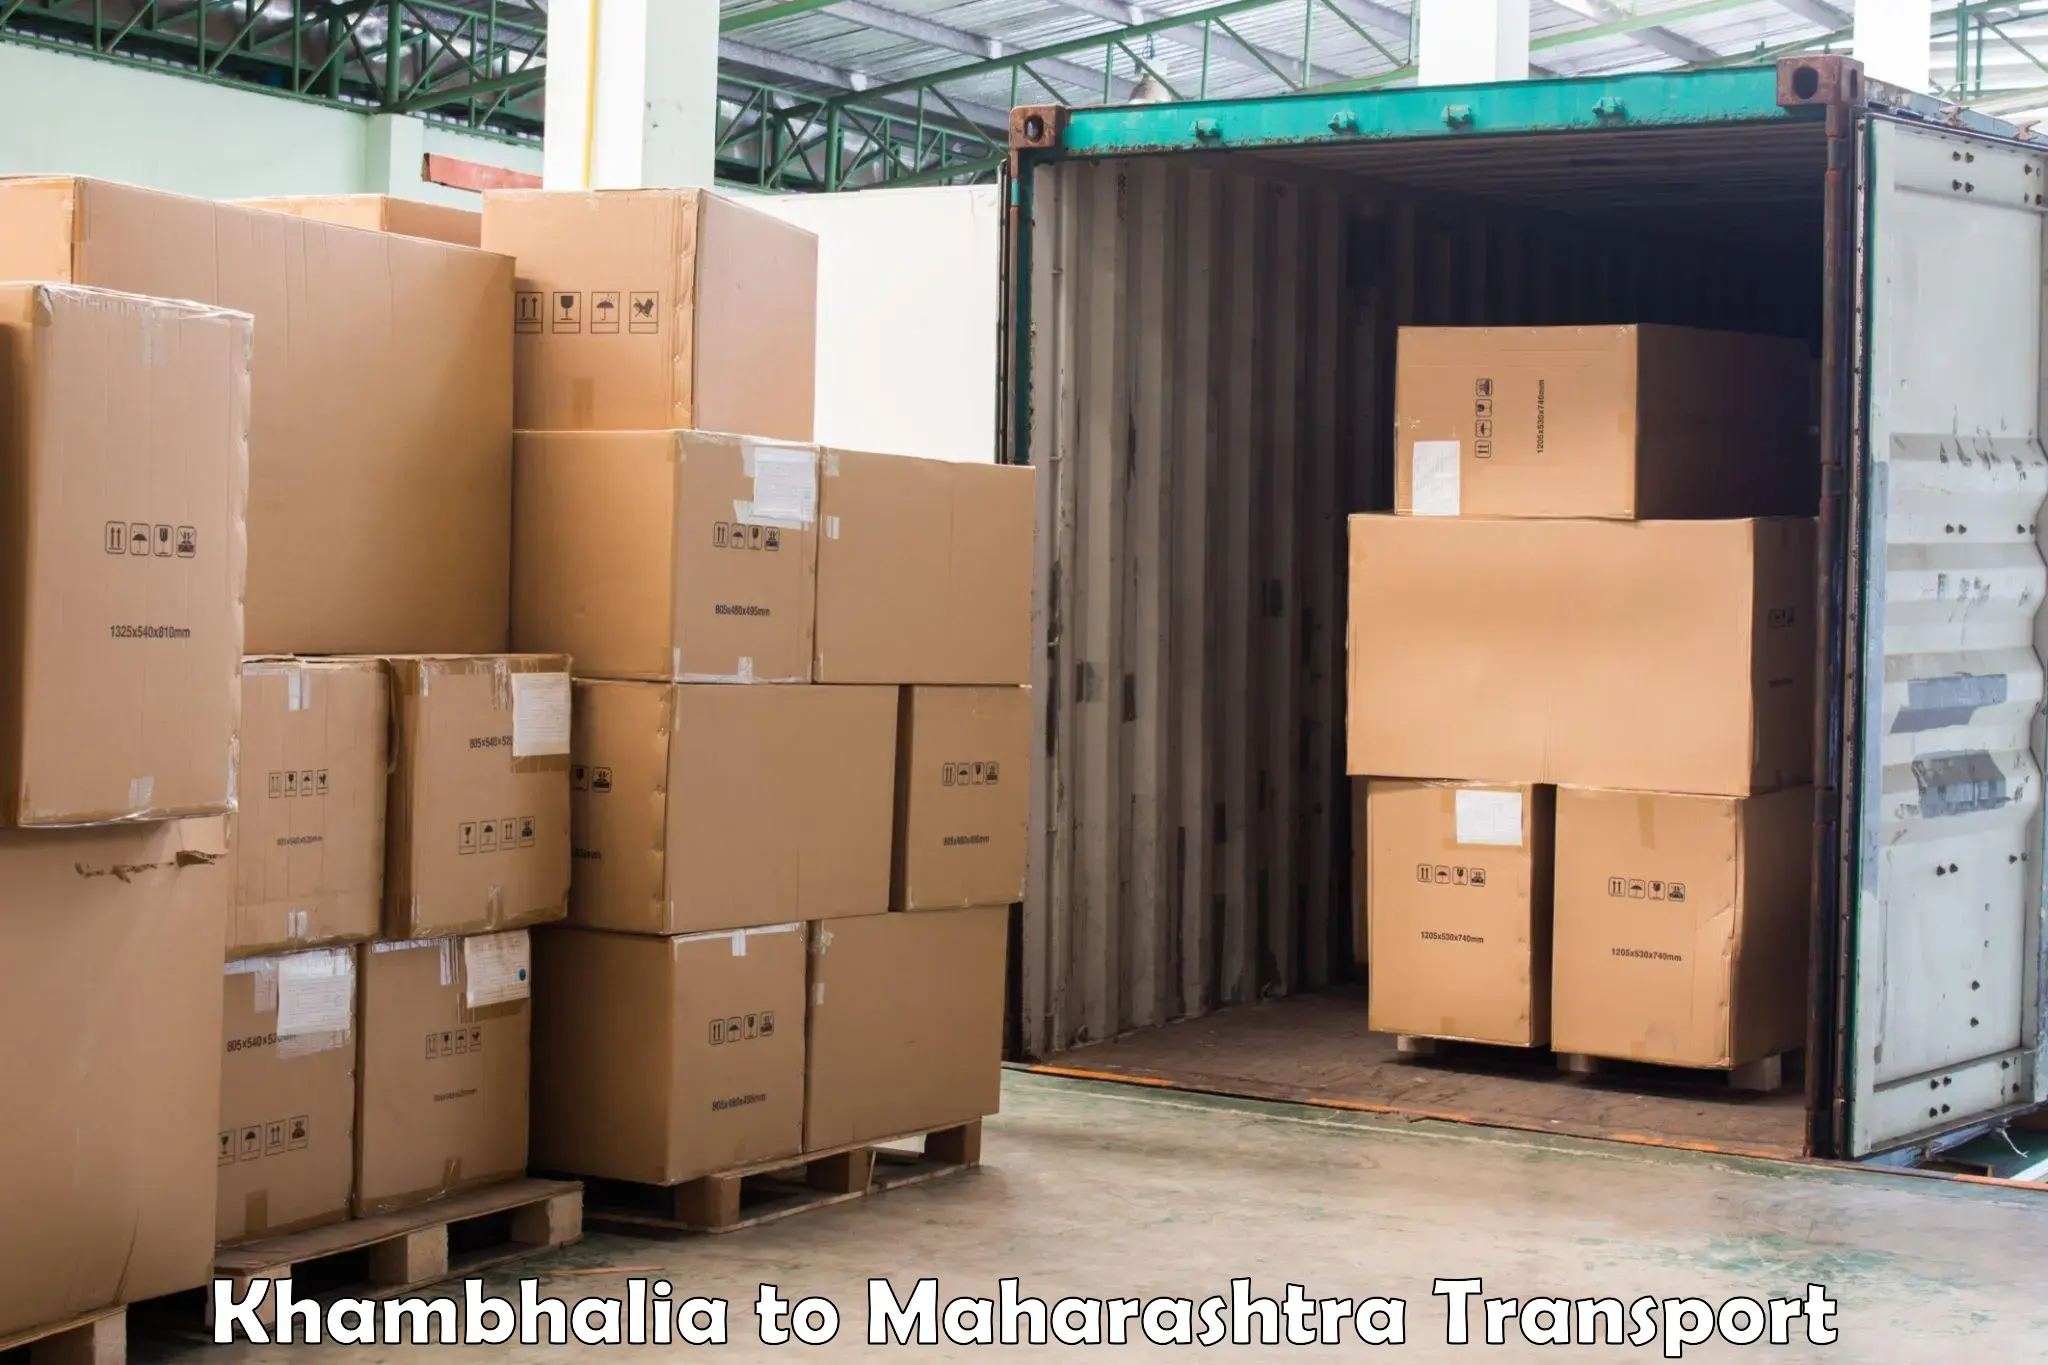 Vehicle transport services Khambhalia to Lonavala